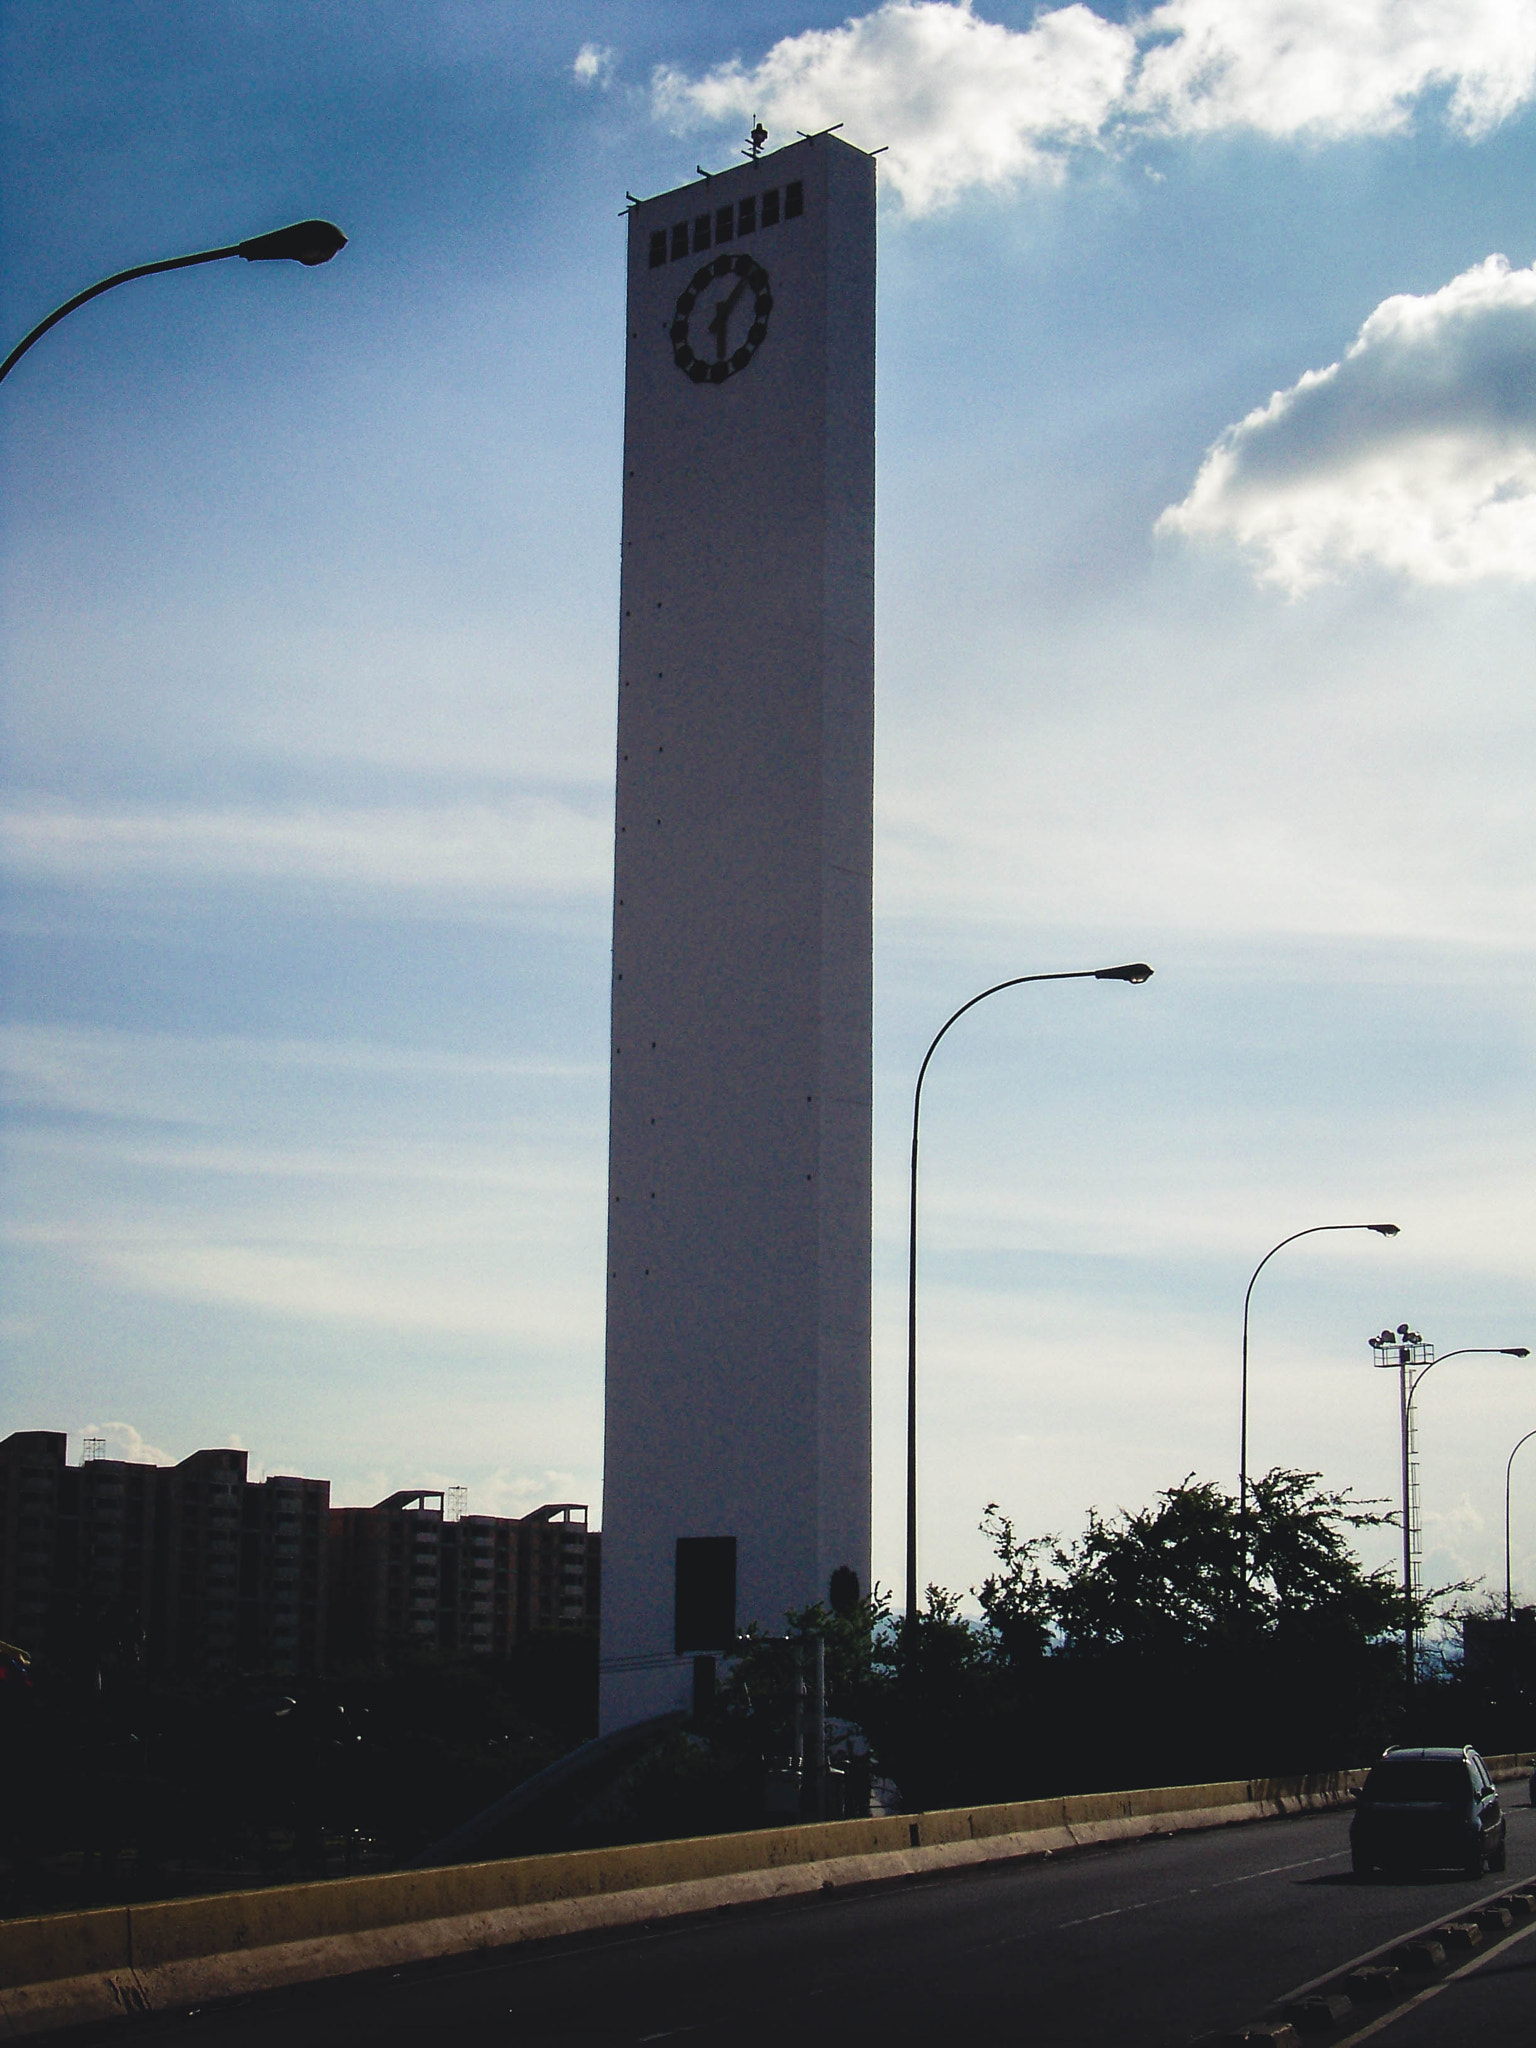 Kodak EASYSHARE Z8612 IS DIGITAL CAMERA sample photo. Obelisco desde el elevado photography